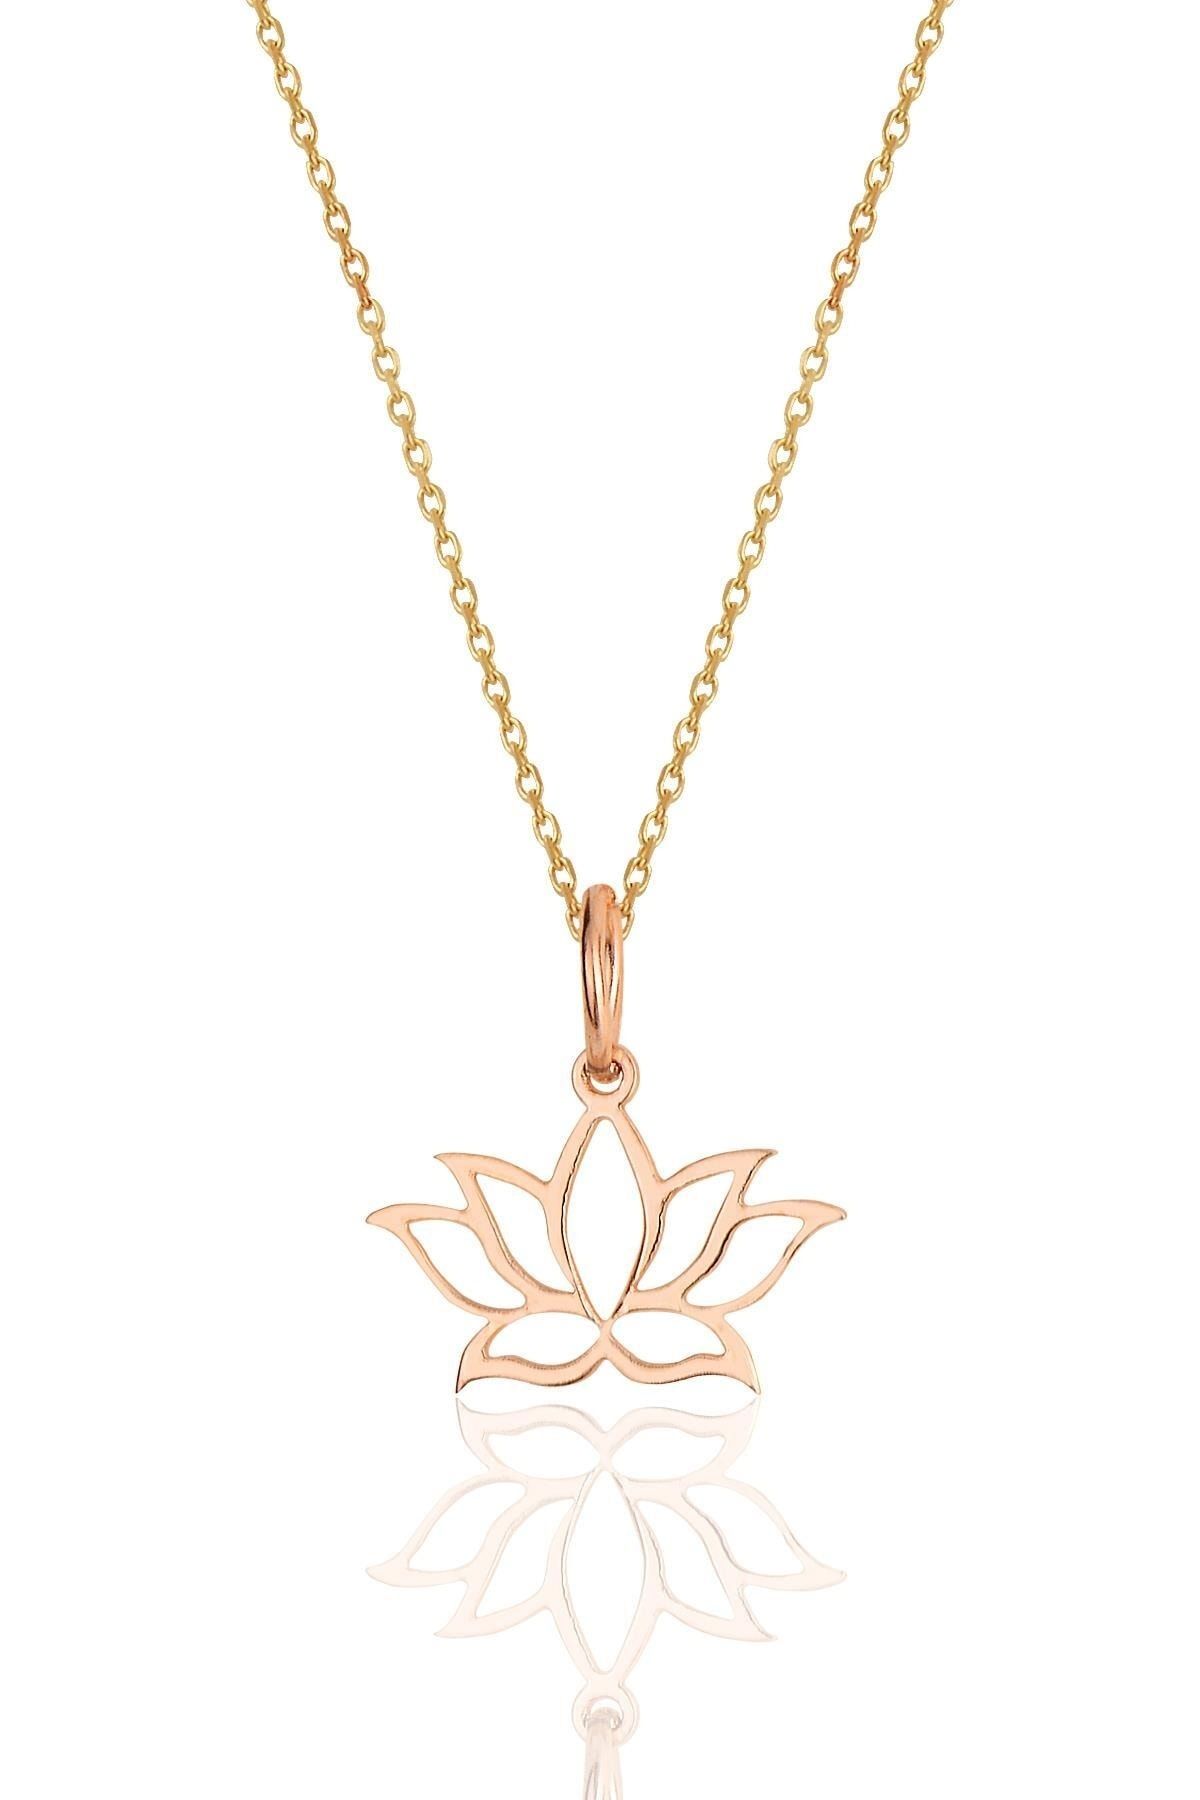 Söğütlü Silver Gümüş Rose Sonsuz Yaşamın Simgesi Lotus Çiçeği Kolye